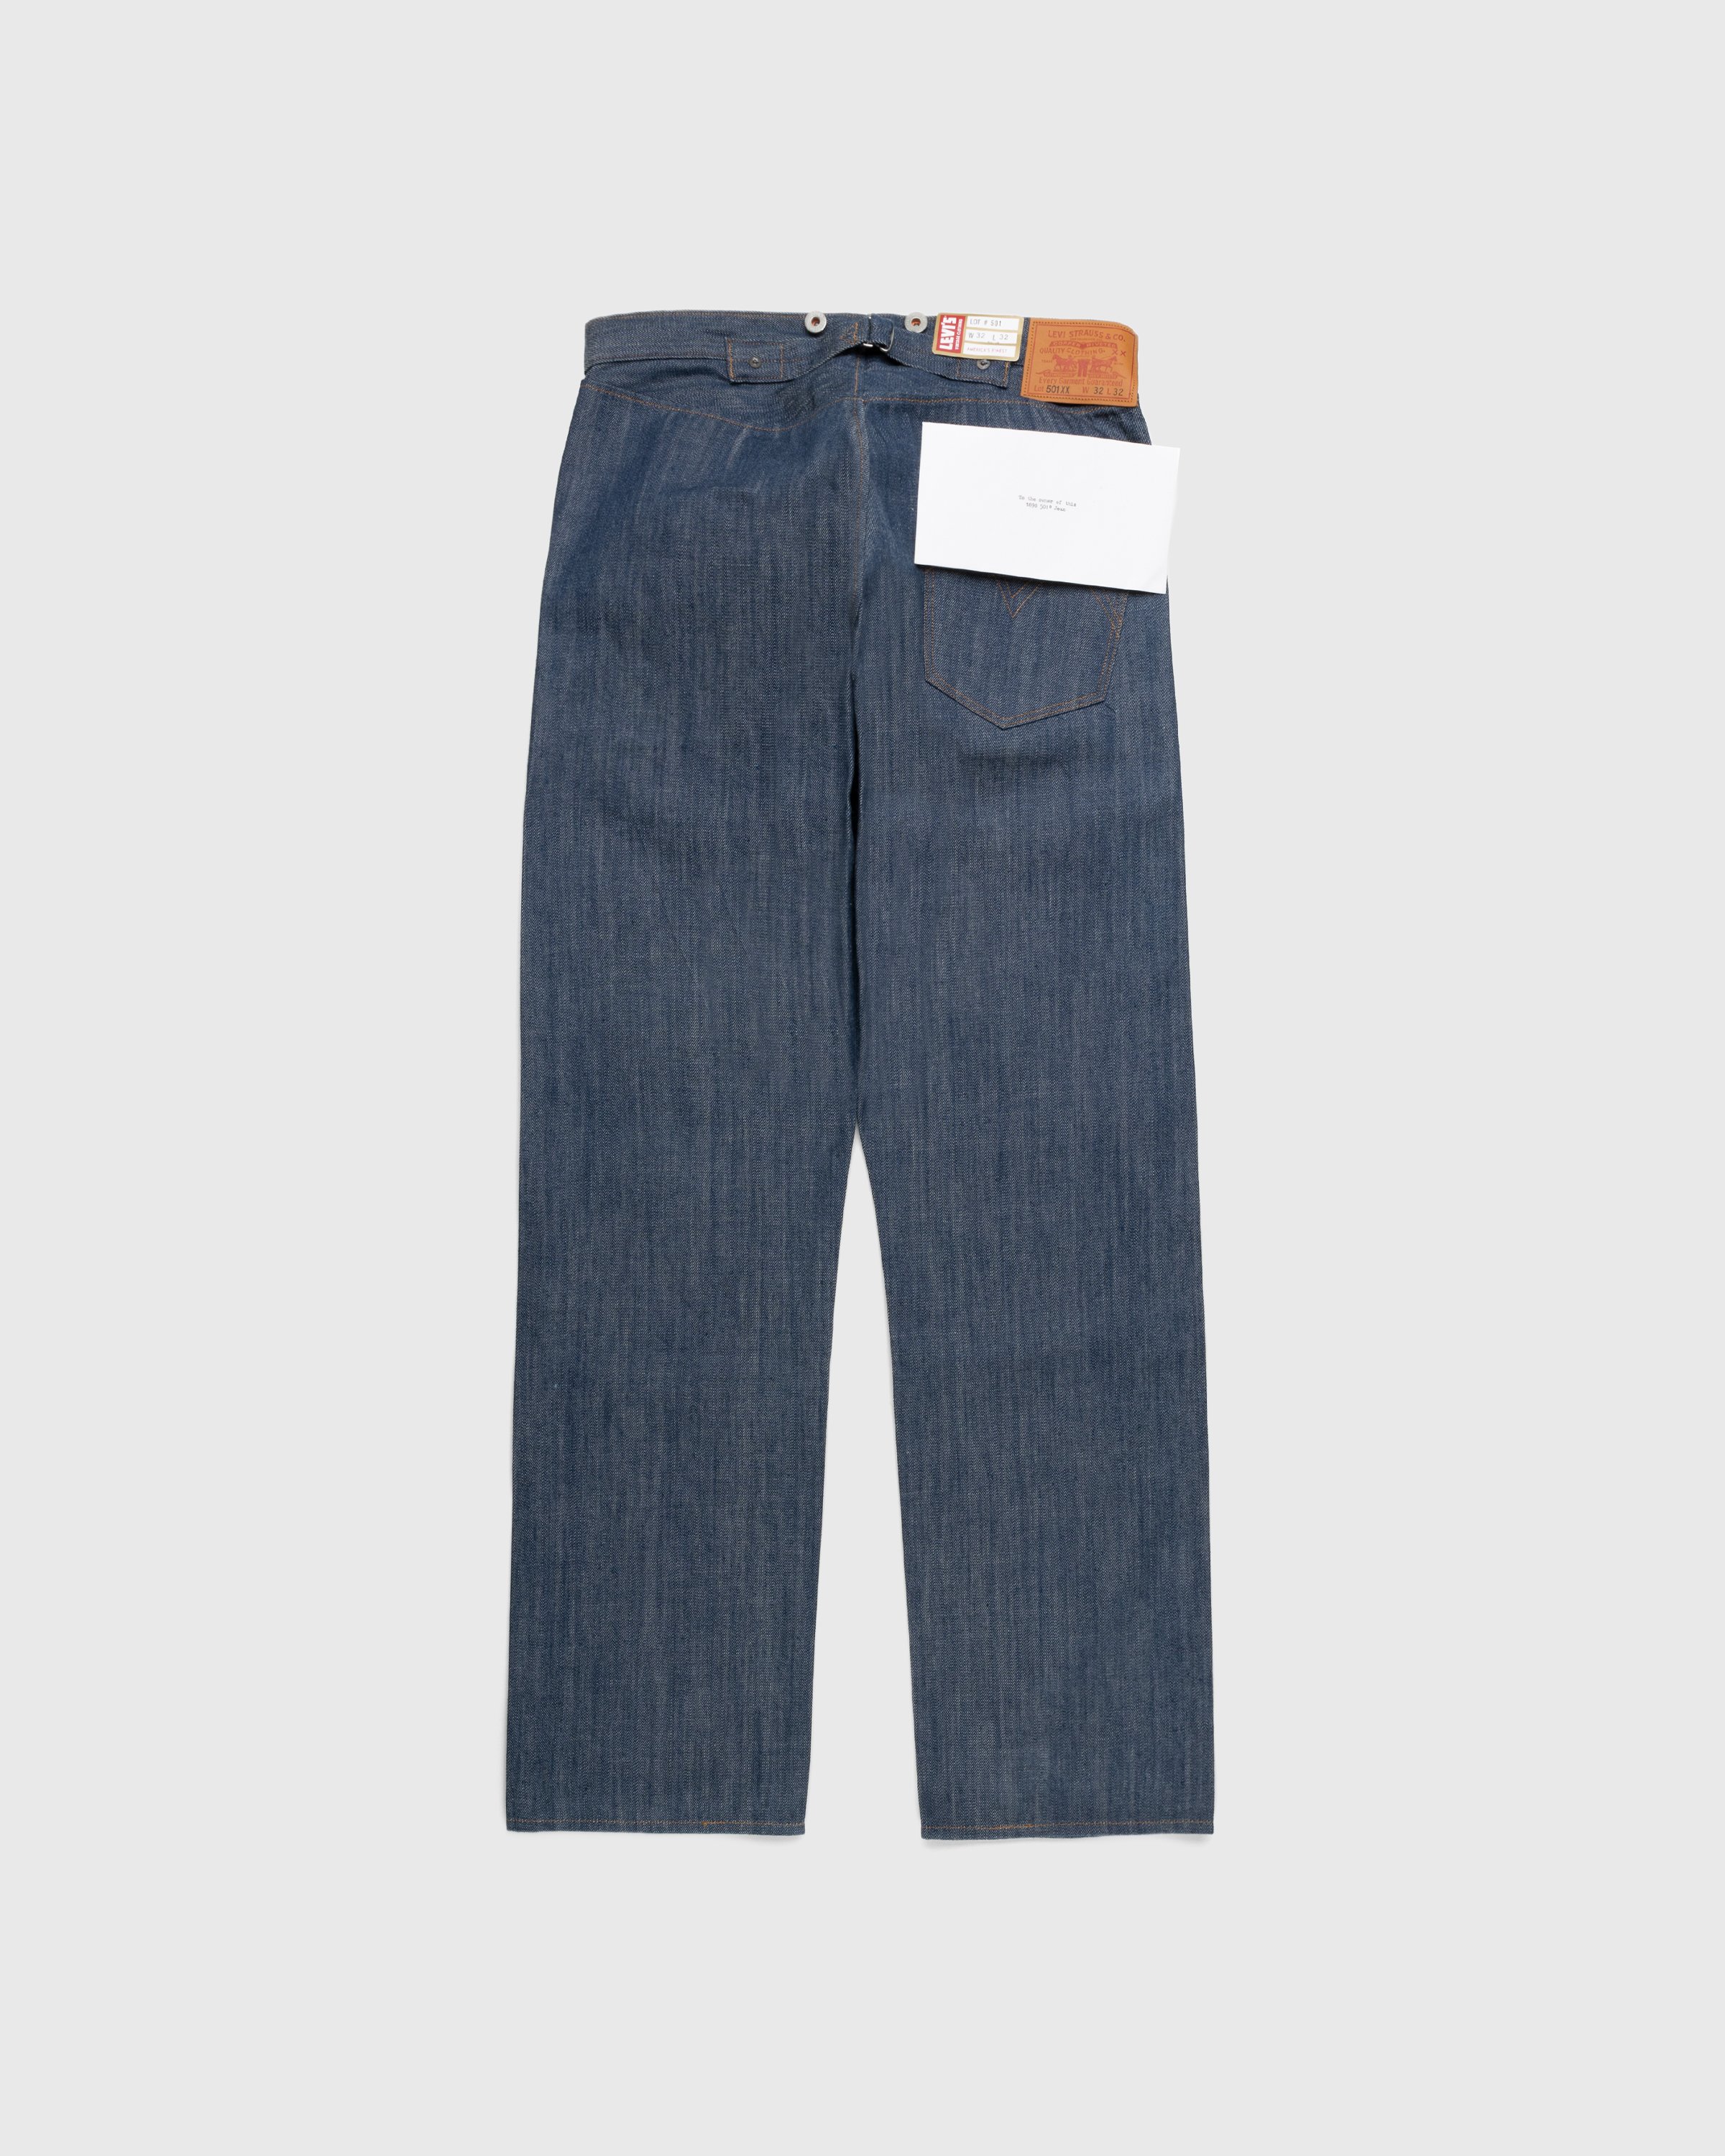 Levi's - 1890 501 Jeans Dark Indigo Flat Finish - Clothing - Blue - Image 2